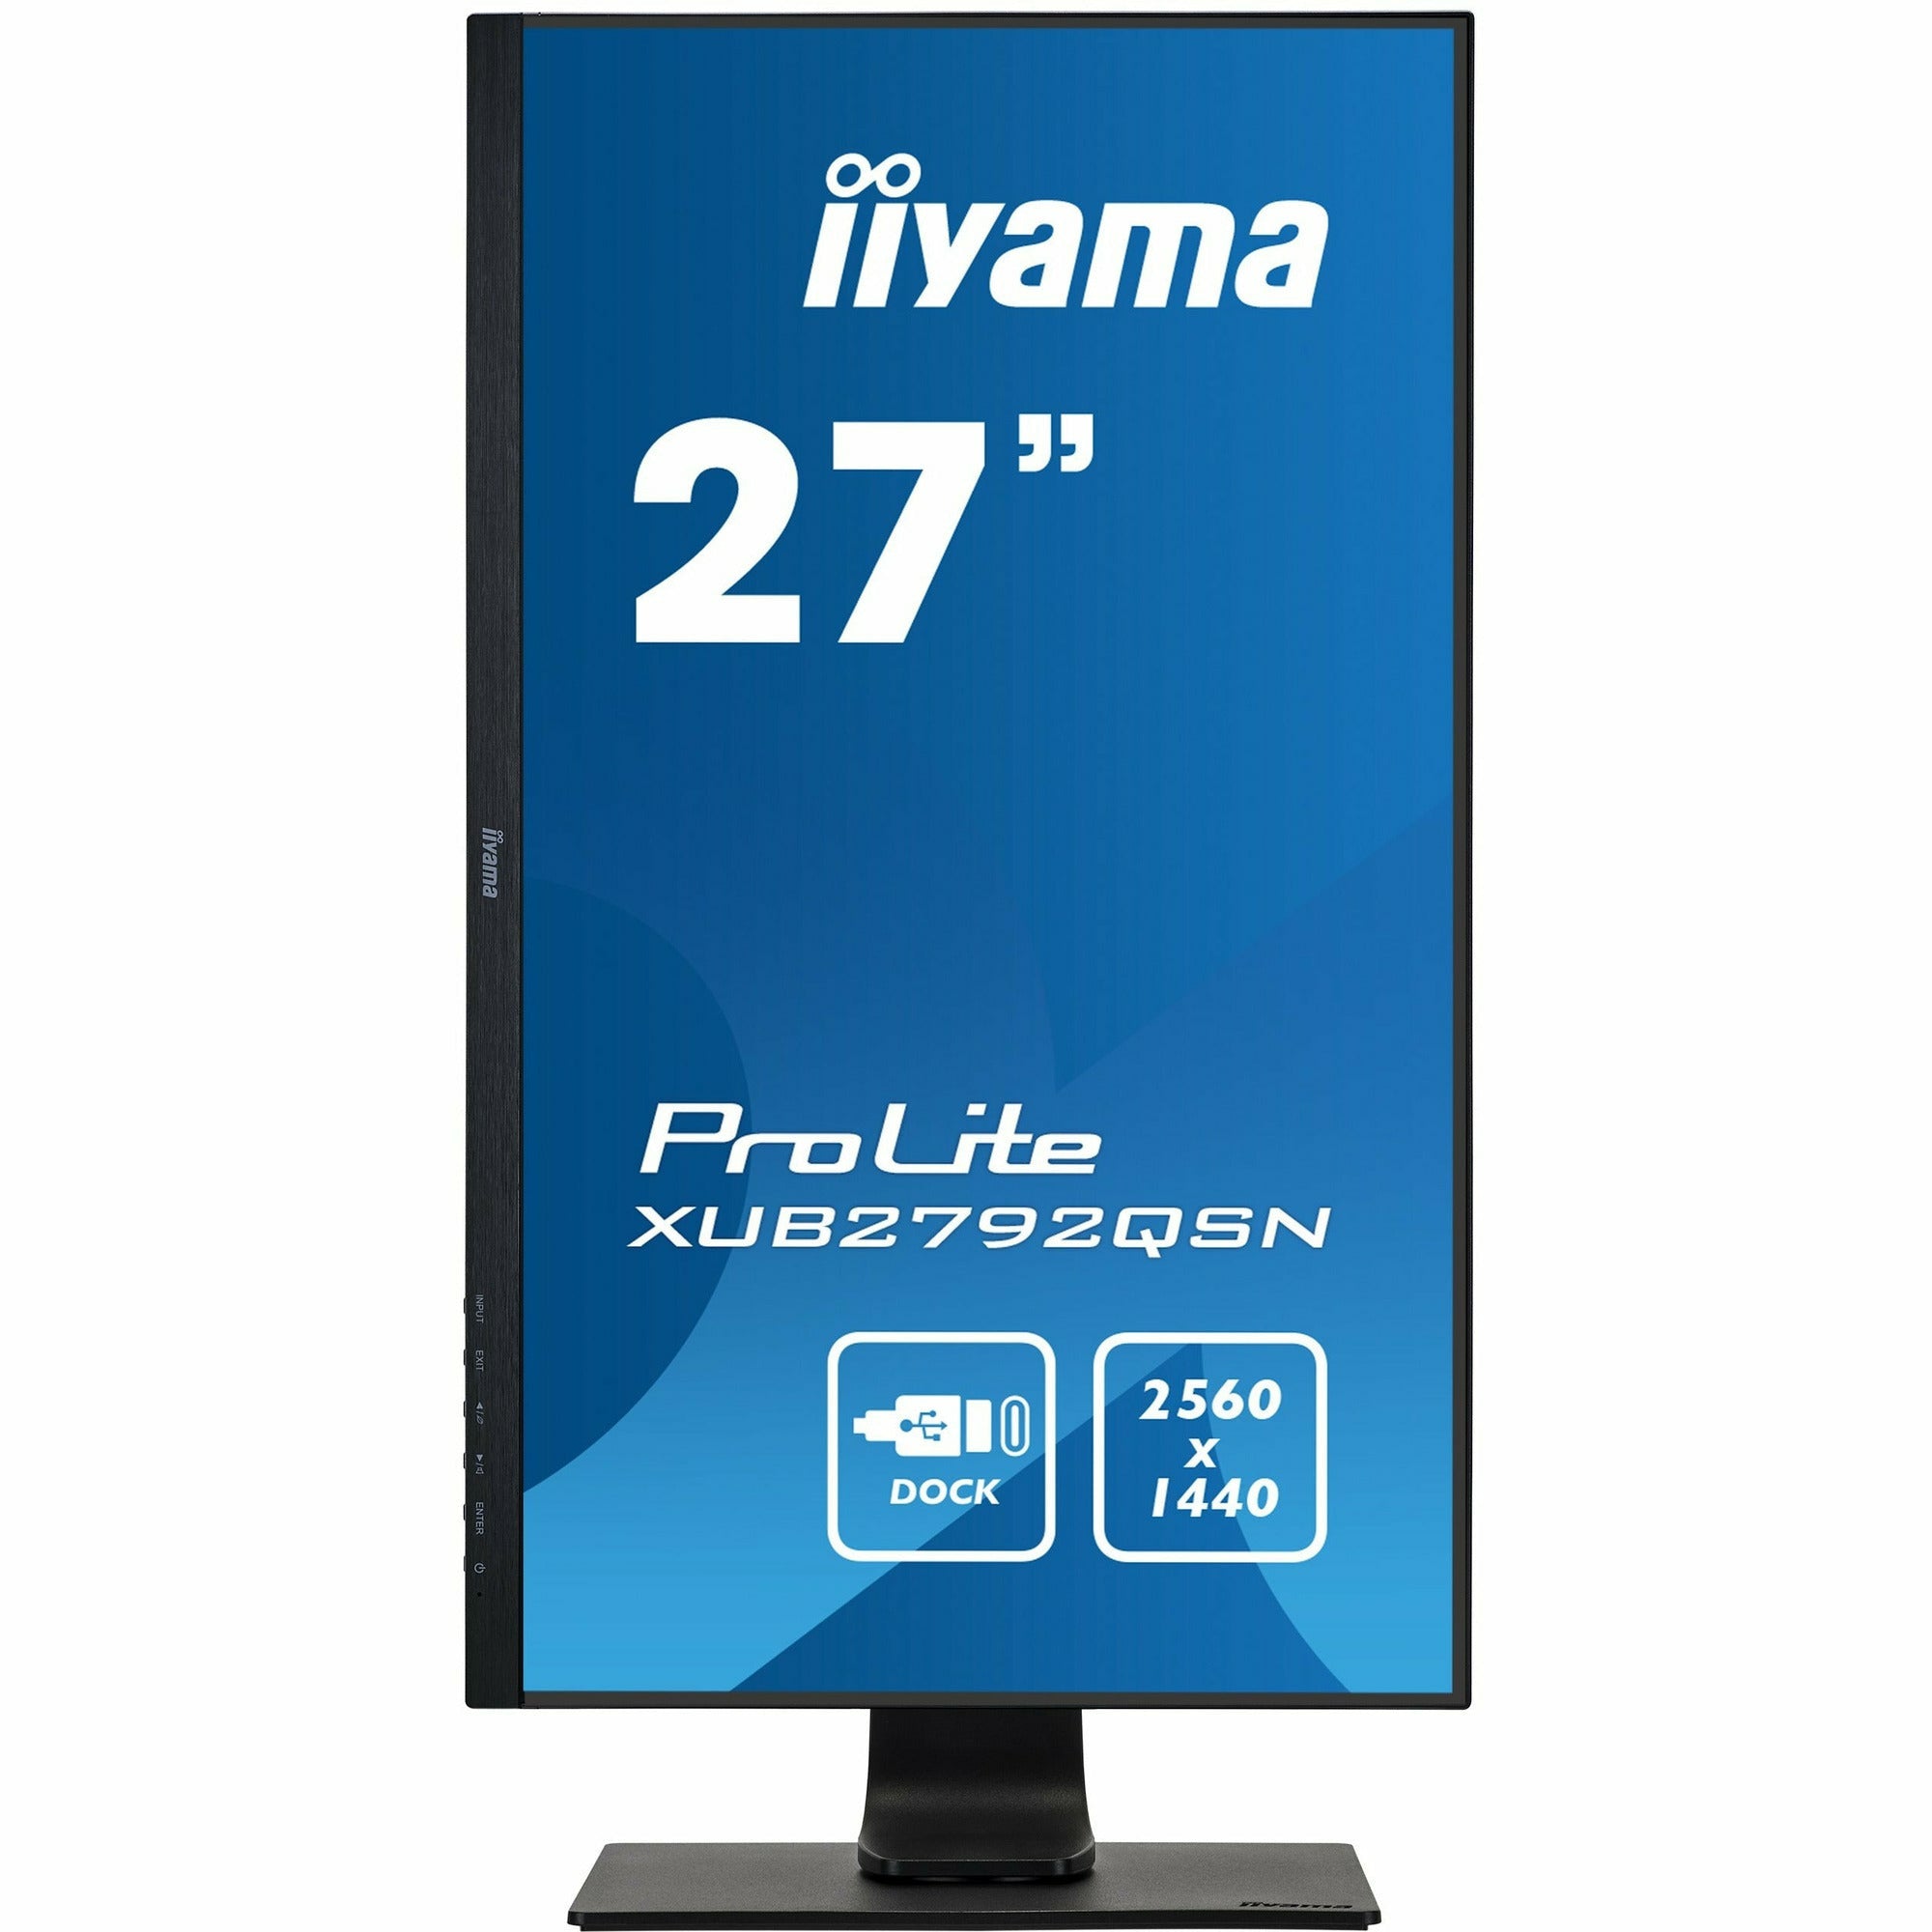 iiyama Prolite XUB2792QSN-B1 27’’ WQHD IPS Display with USB-C dock